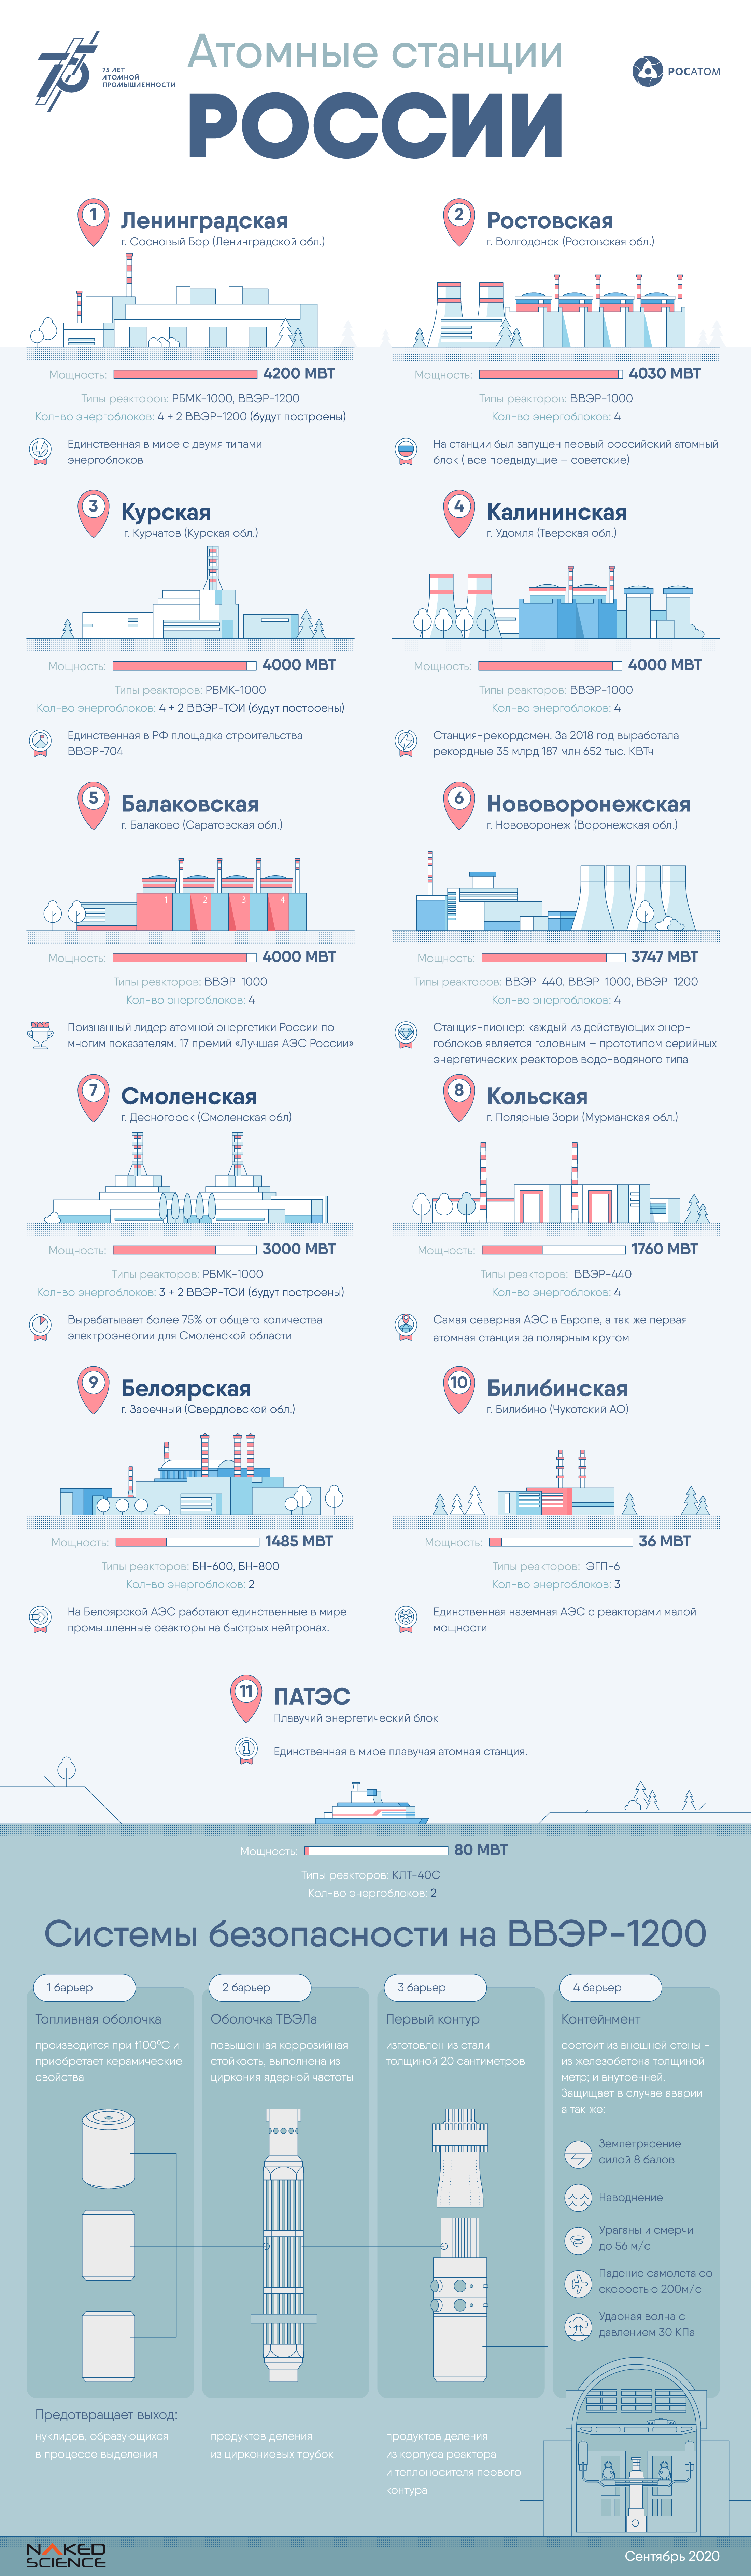 Все атомные электростанции России объединили в одной инфографике